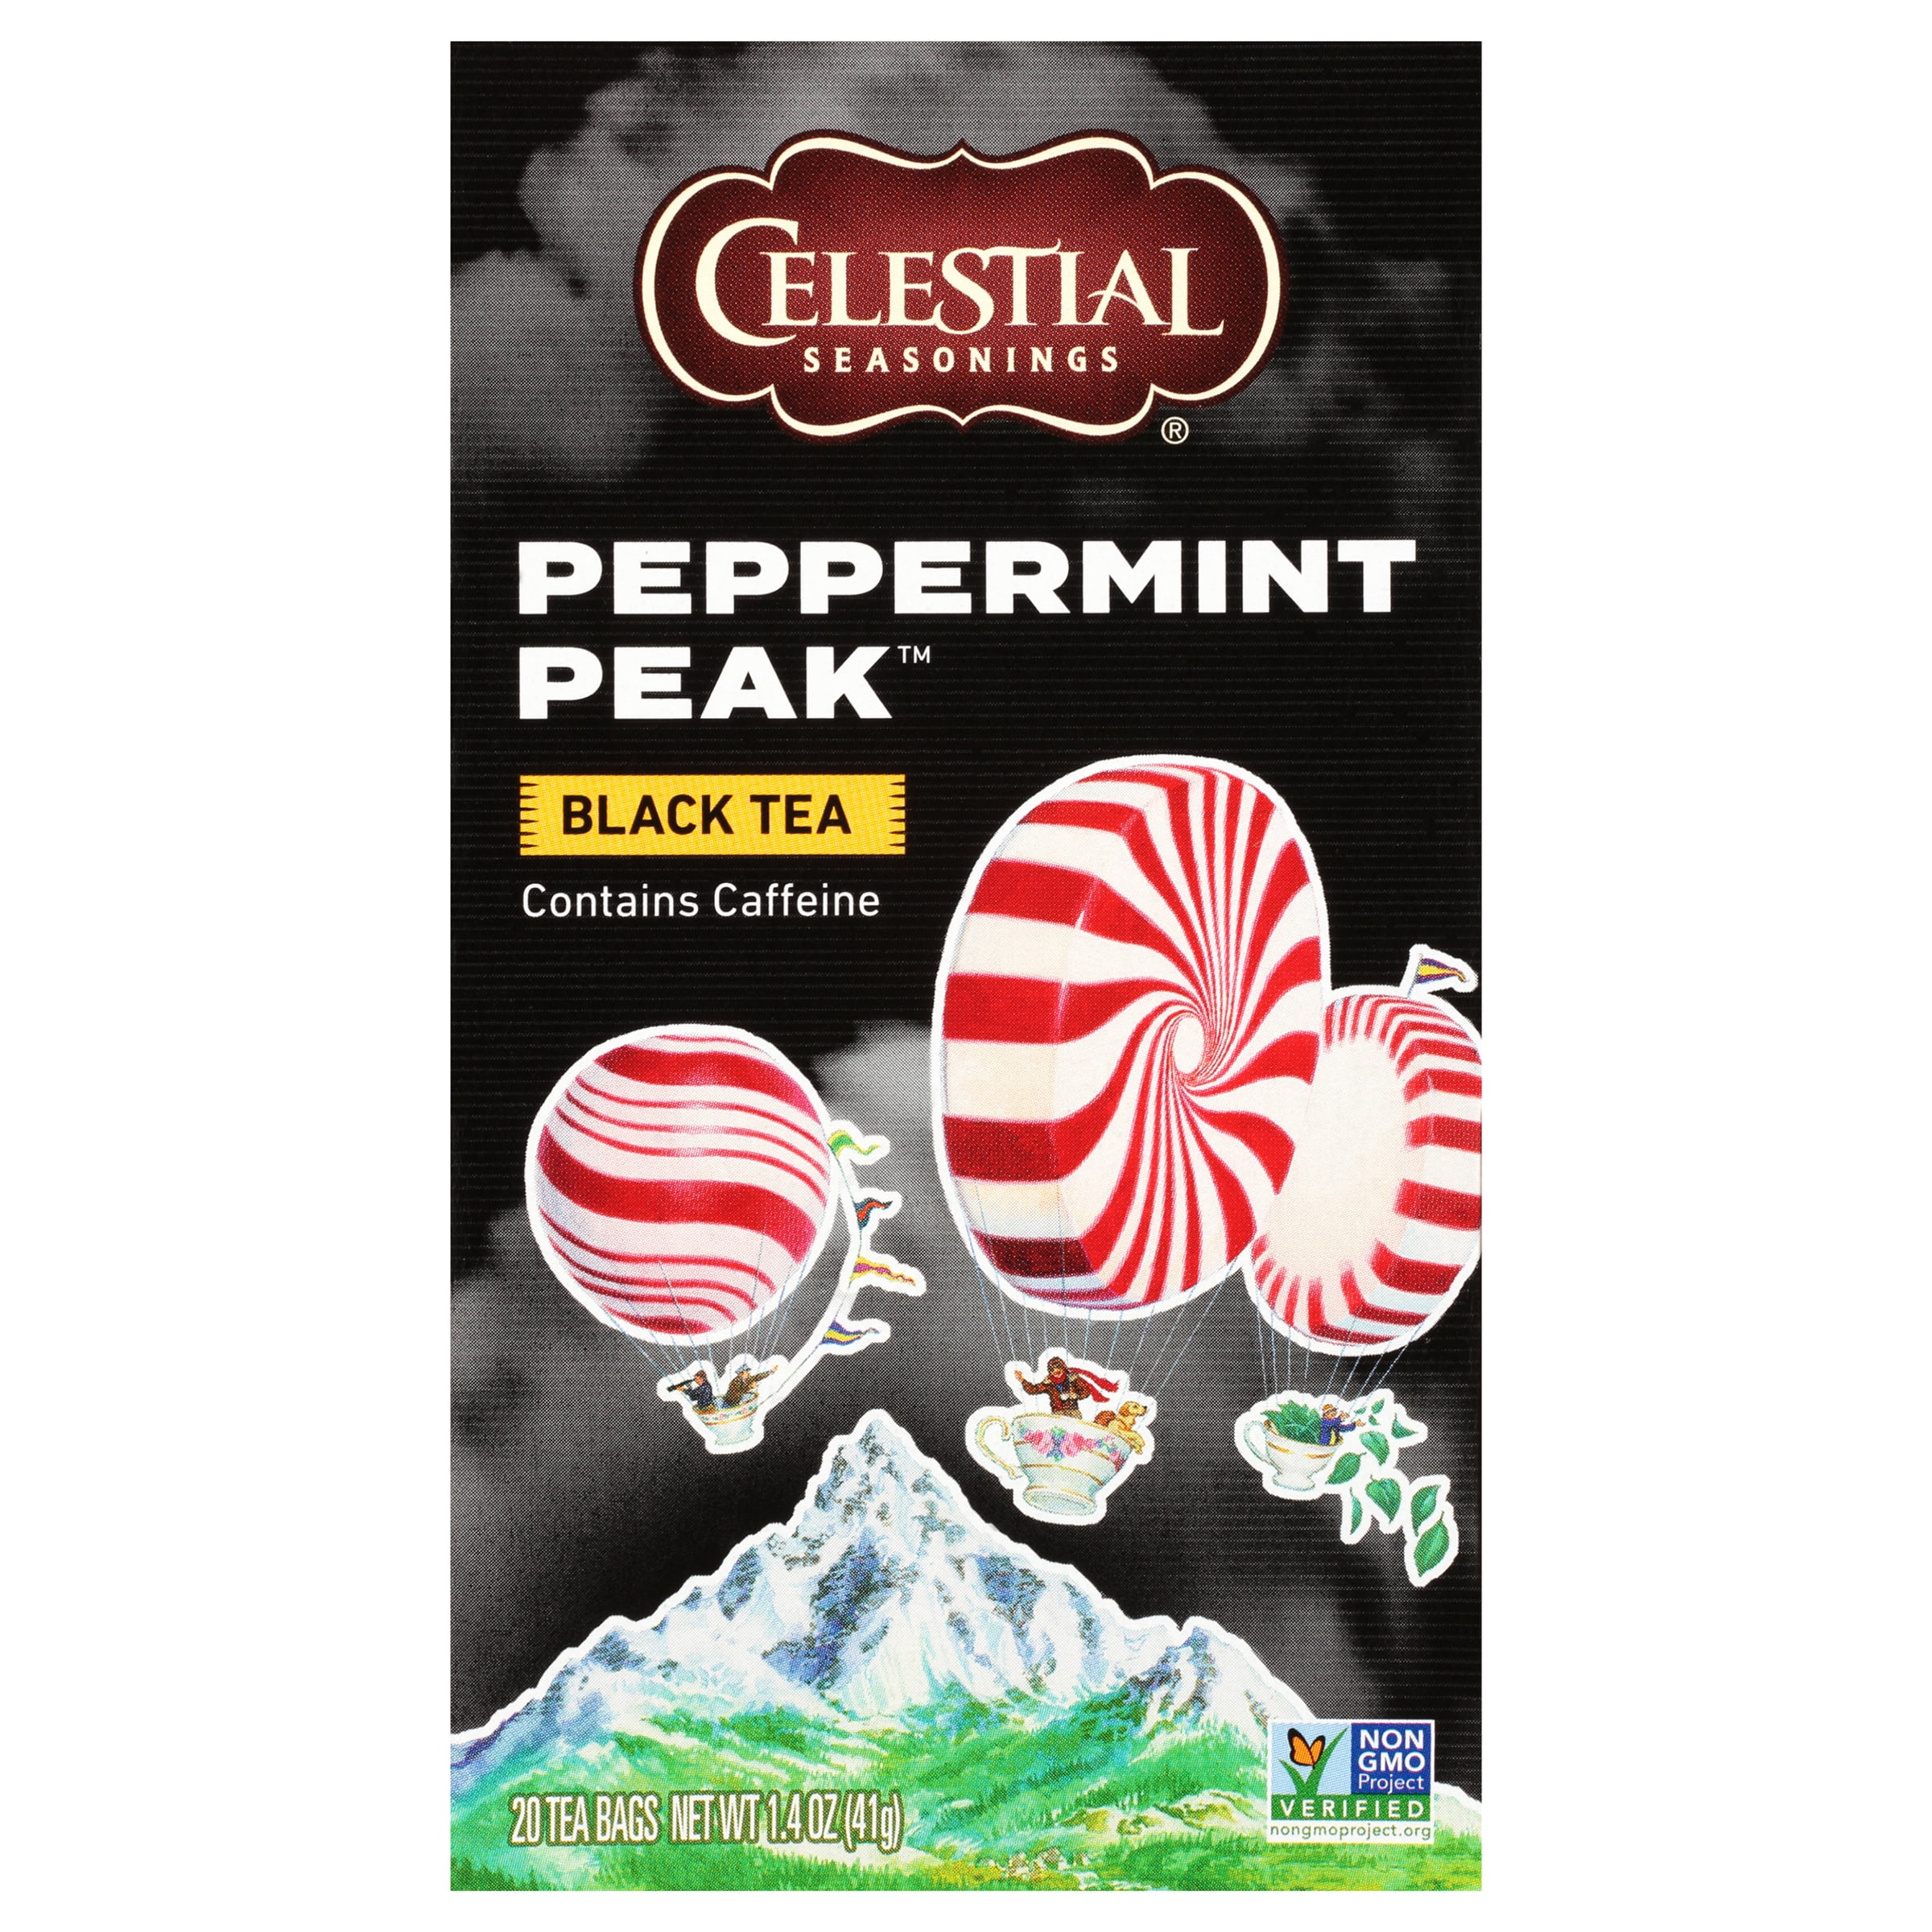 Celestial Seasonings Peppermint Peak Black Tea, 20 Ct Tea Bags